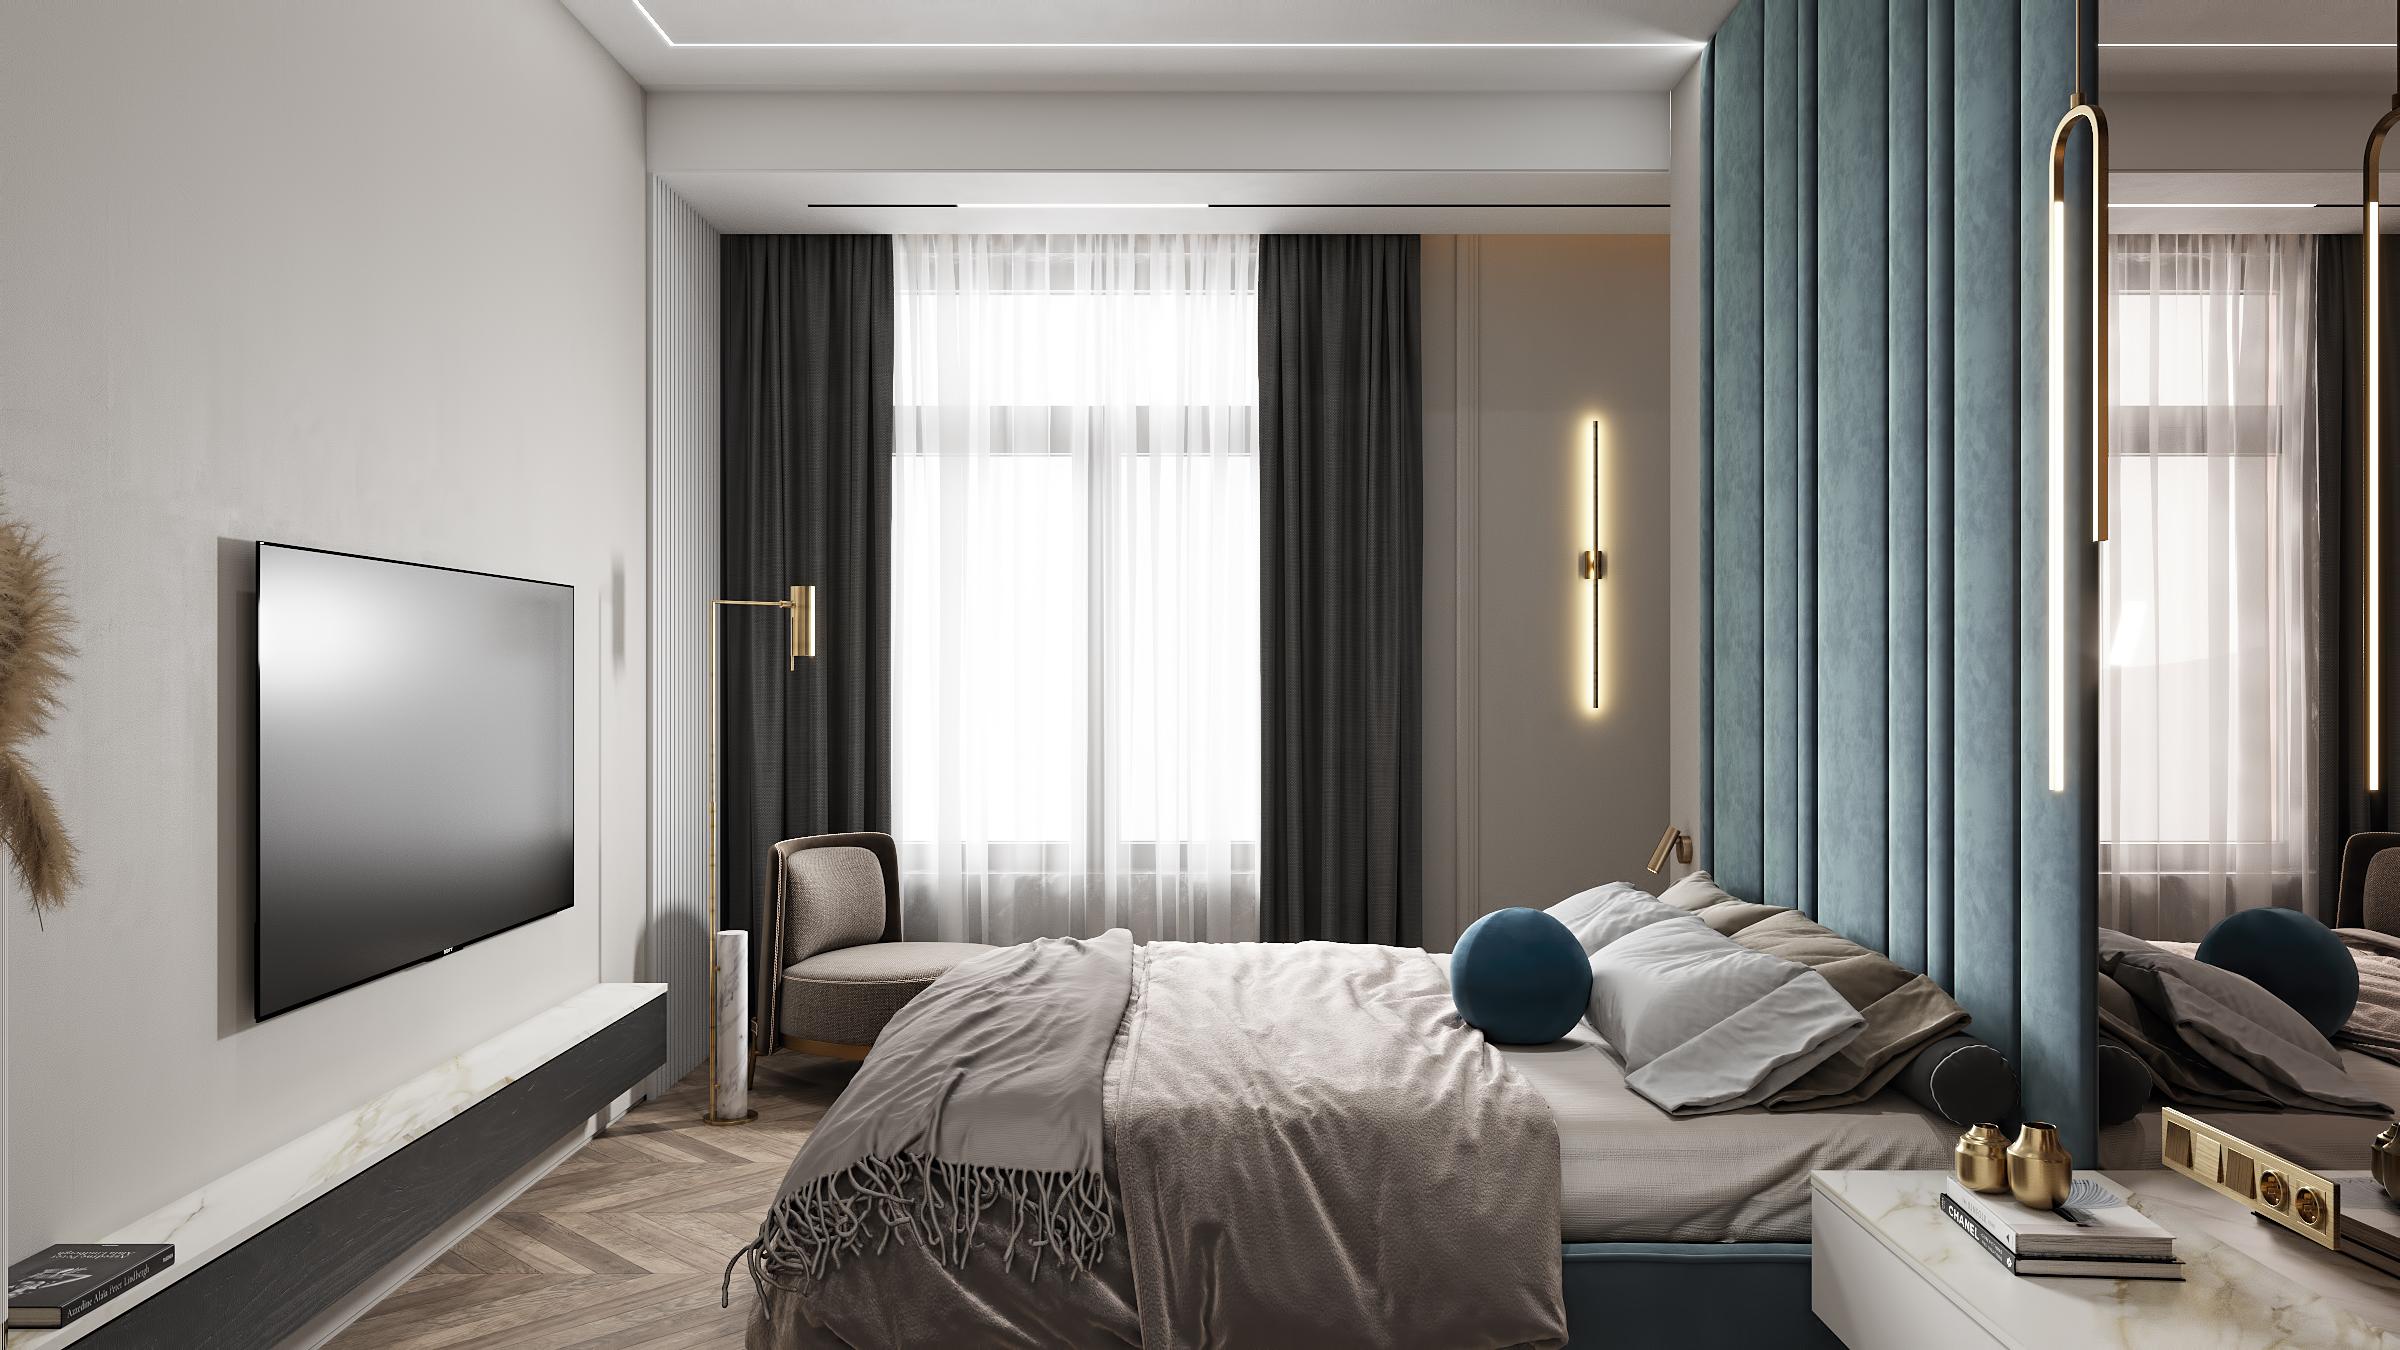 Интерьер спальни cветовыми линиями, бра над кроватью, подсветкой настенной, подсветкой светодиодной, светильниками над кроватью и с подсветкой